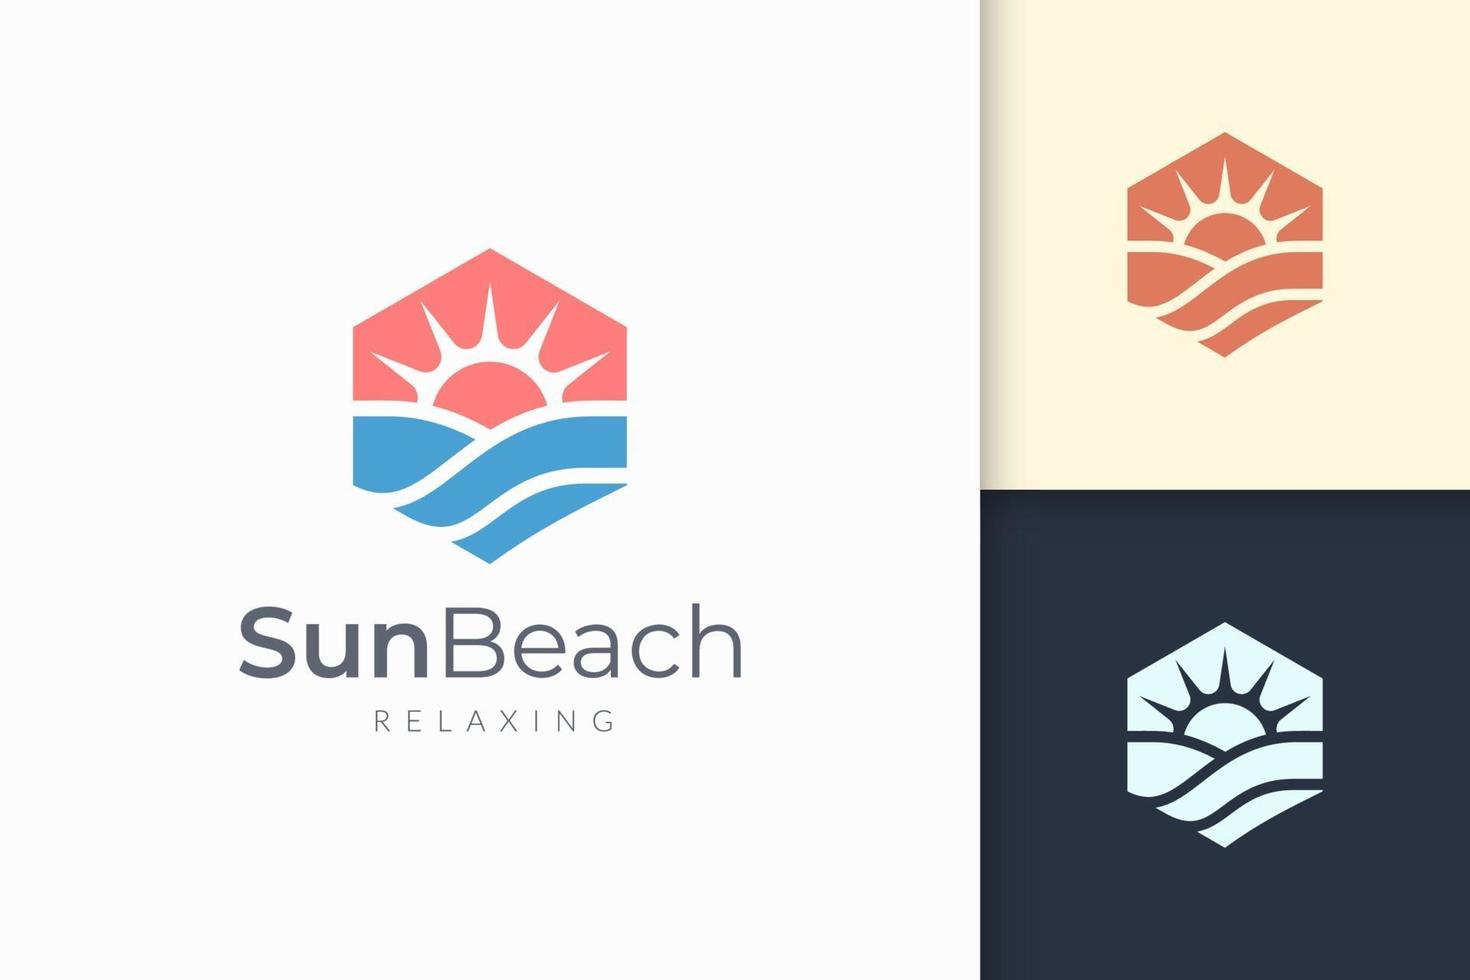 le logo de l'océan ou de la mer dans une vague d'eau abstraite et le soleil représentent l'aventure vecteur